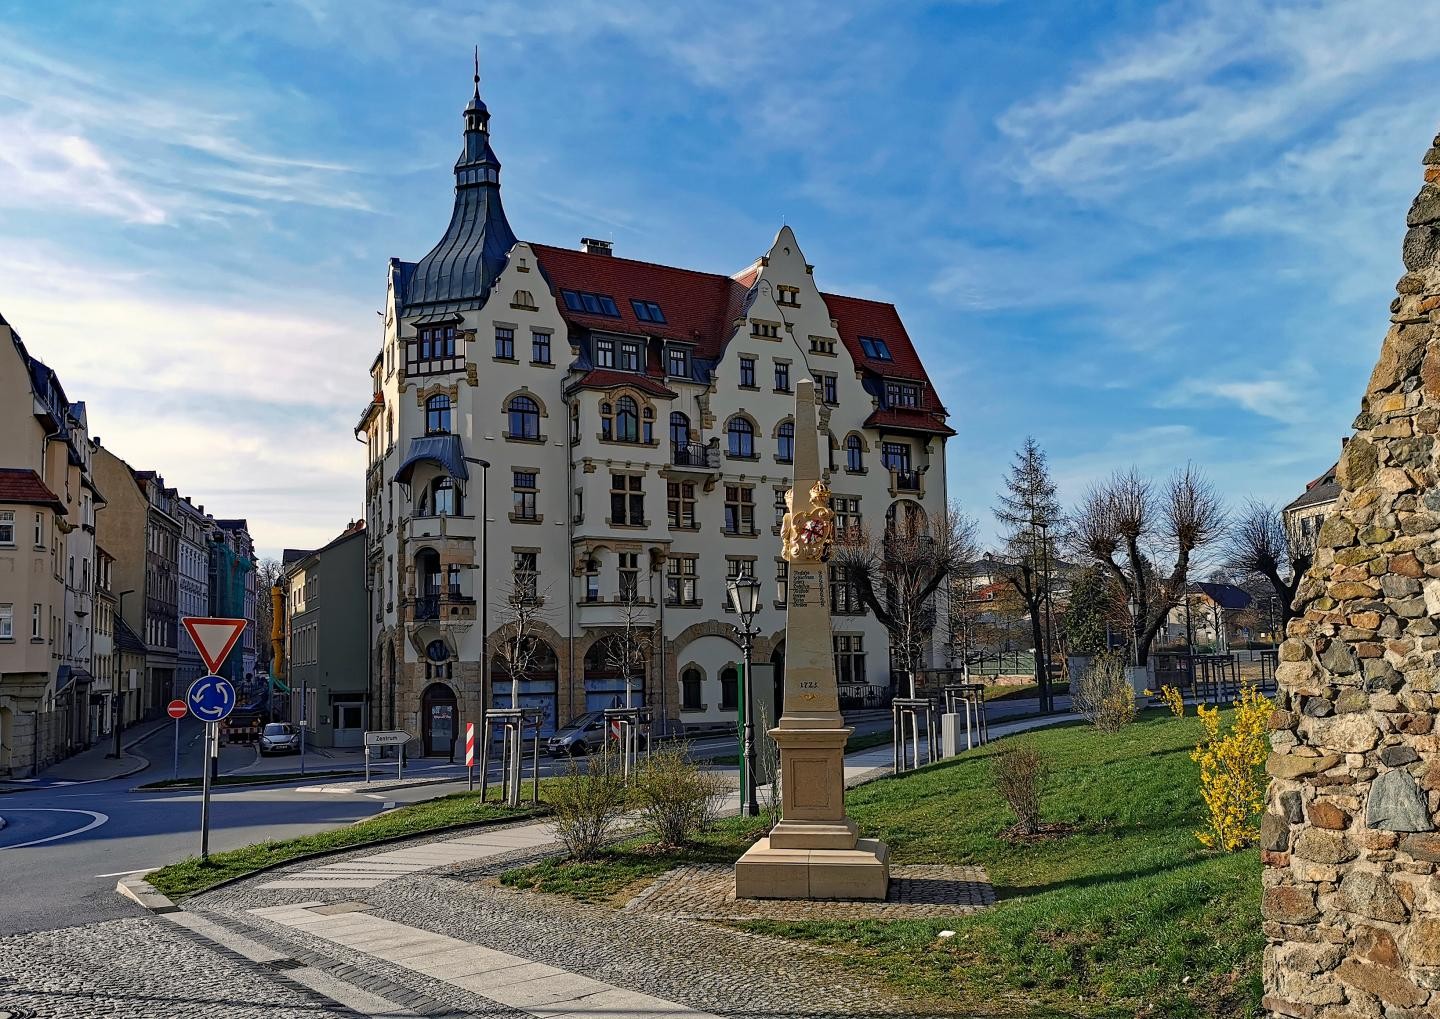 Rathaus in Löbau